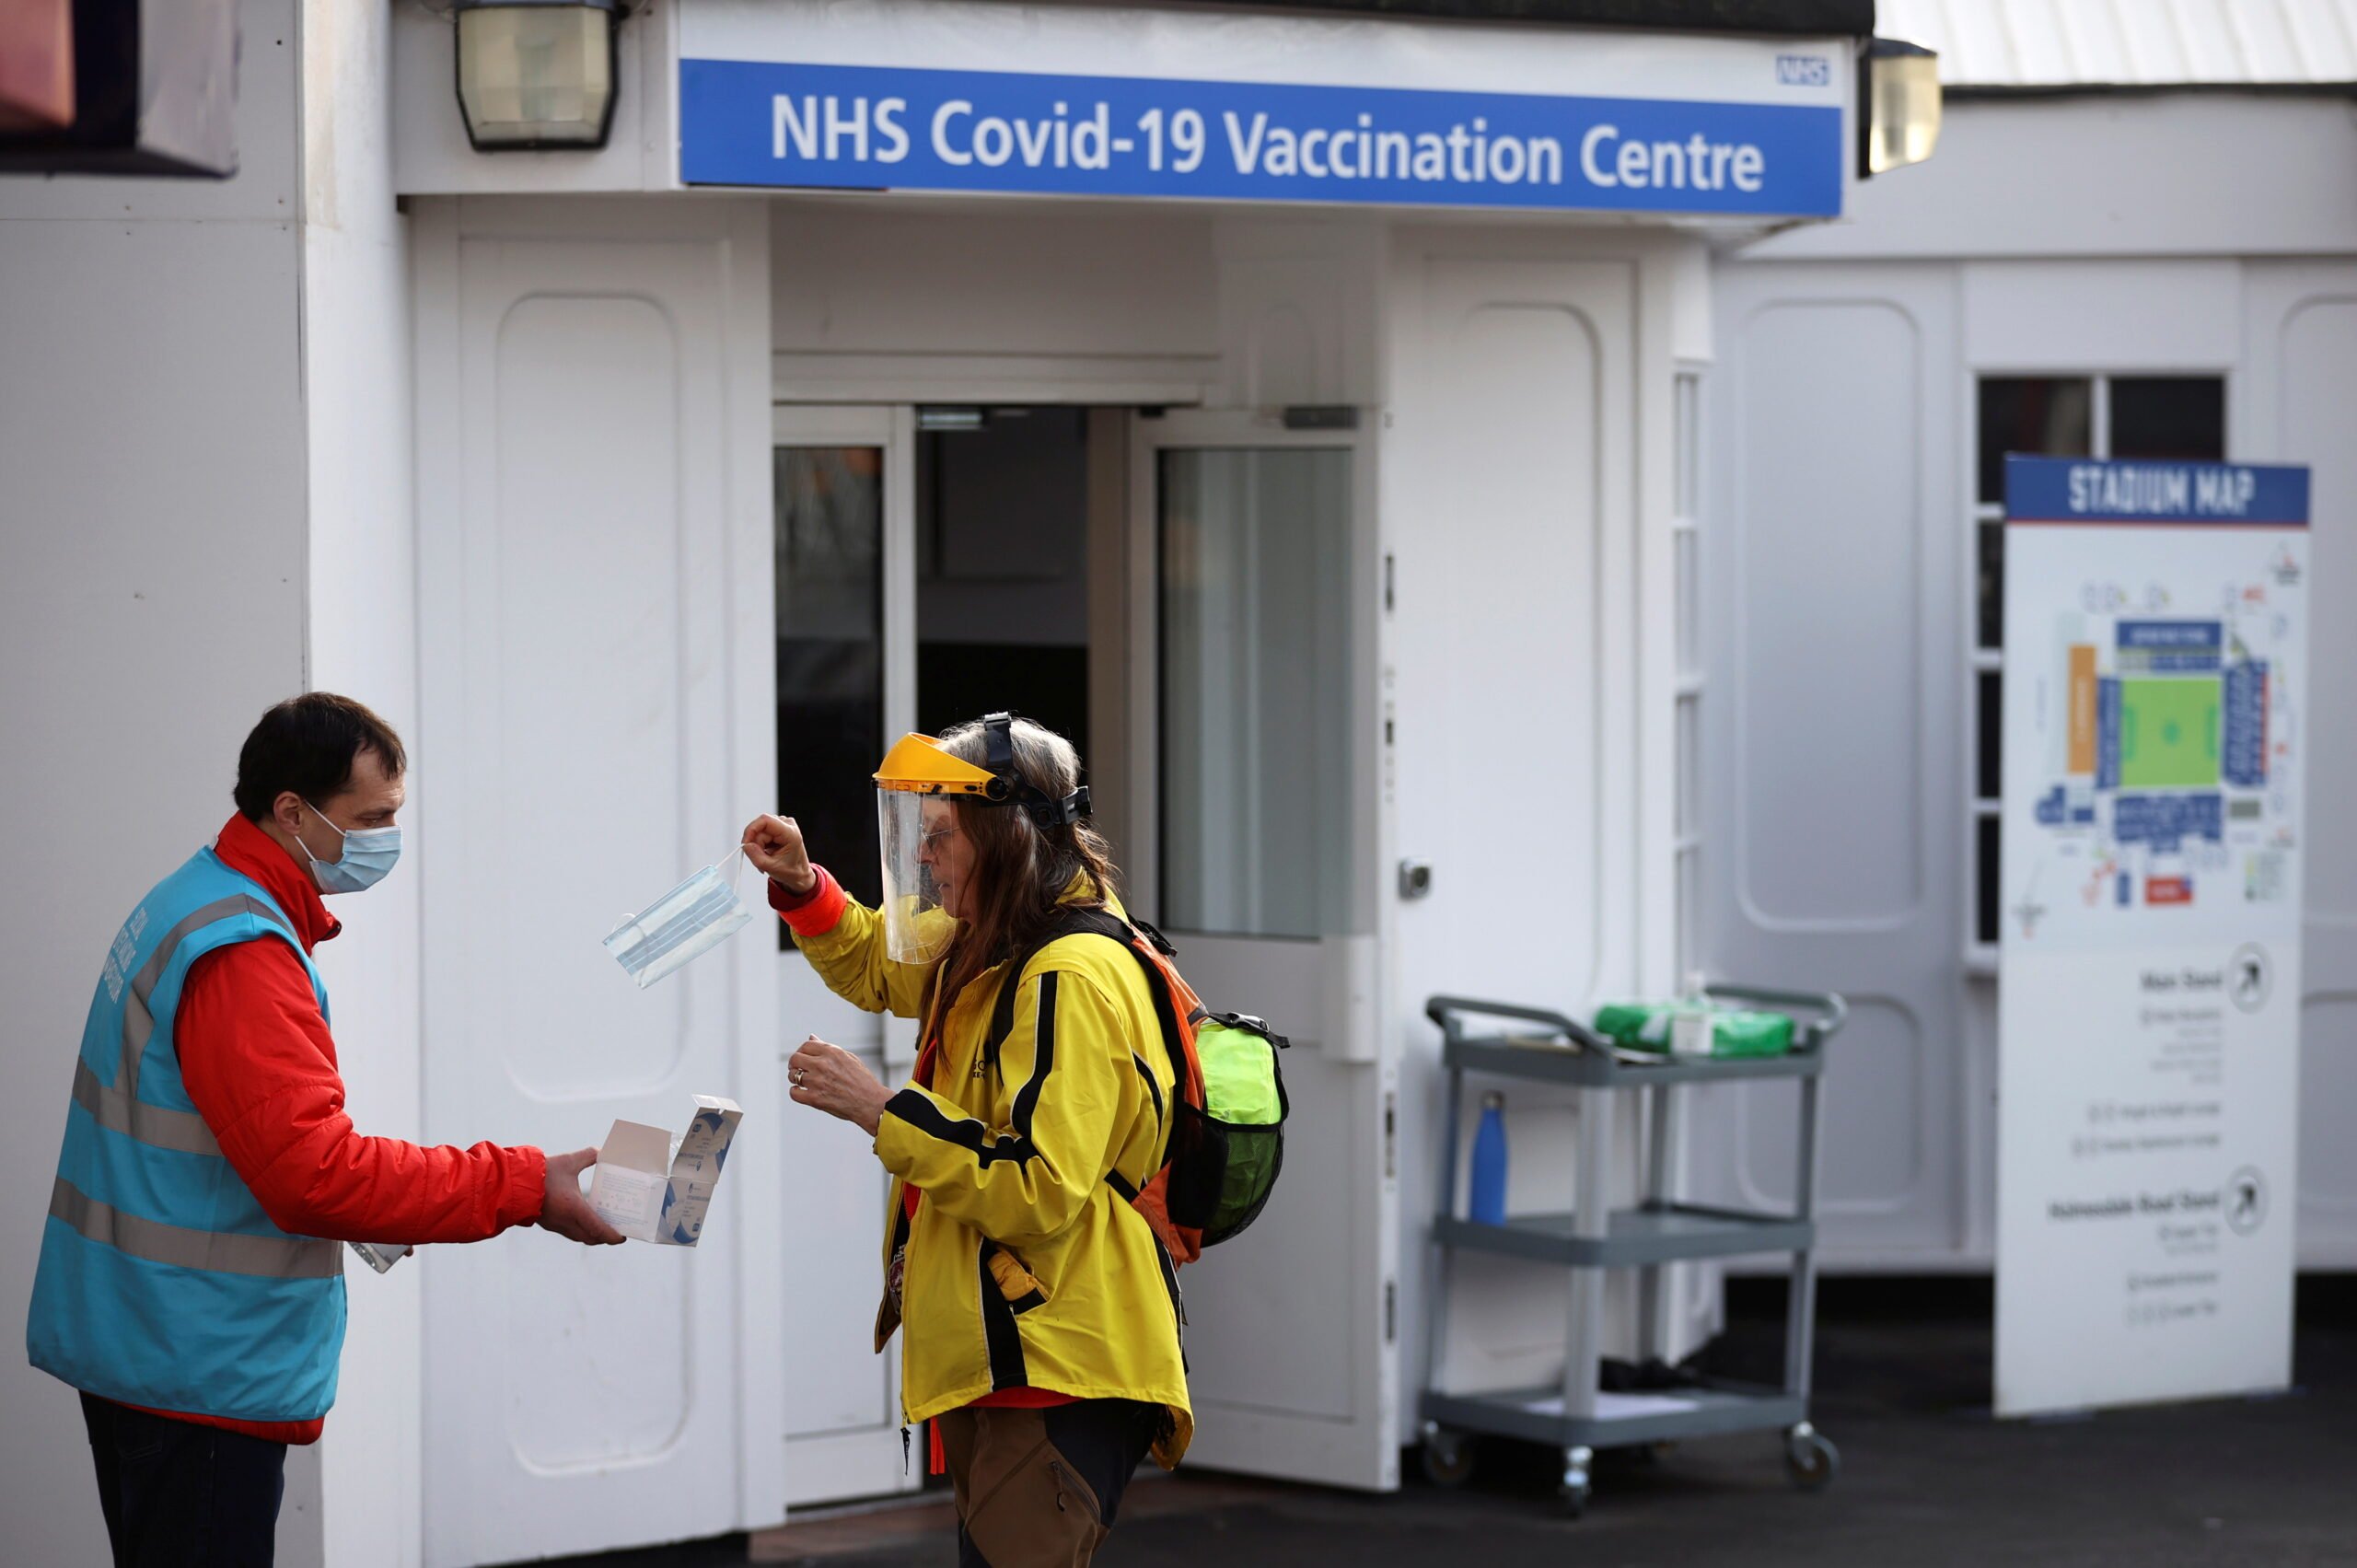 Οι υπουργοί του Ηνωμένου Βασιλείου προσπαθούν να ενισχύσουν τη λήψη εμβολίων Covid-19